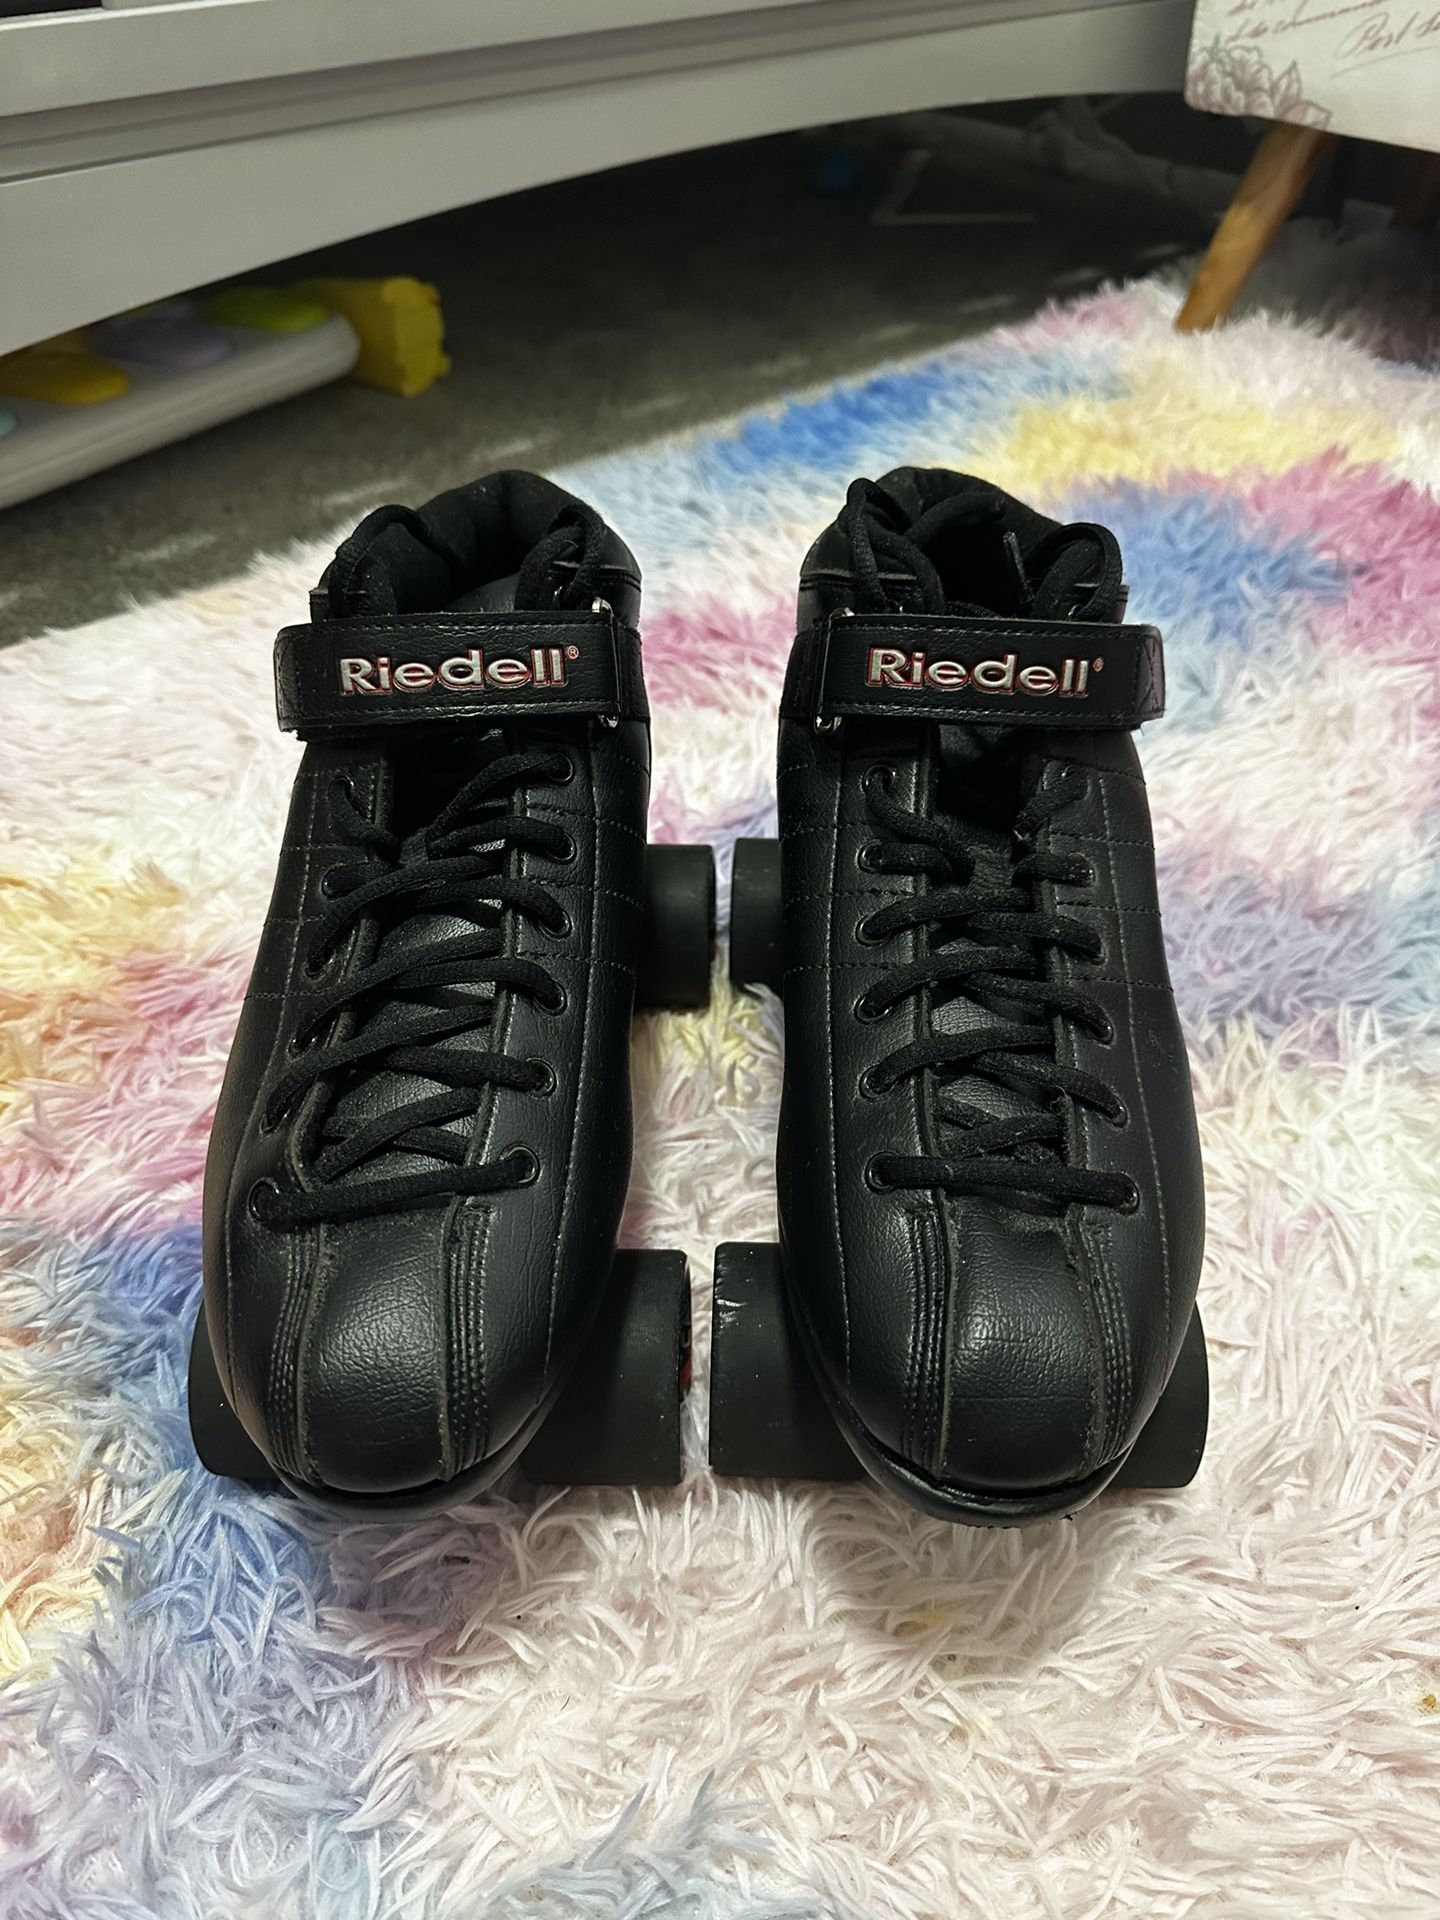 Riedell Roller Skates Size Men’s 12